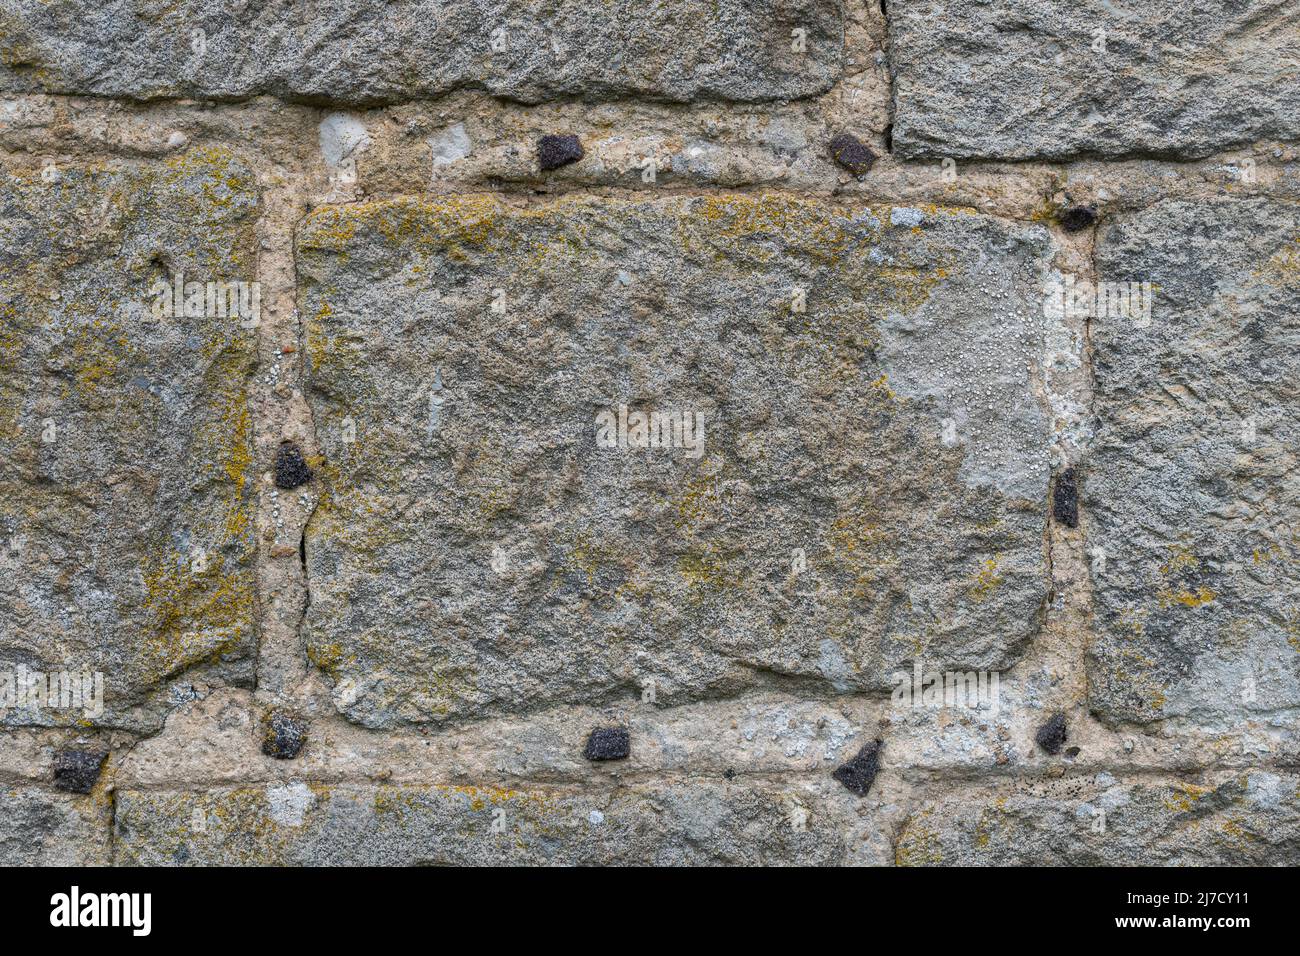 Mur montrant le galement (également appelé garretage ou greneting), une technique architecturale où de petits morceaux de pierre sont poussés dans le mortier humide, Royaume-Uni Banque D'Images